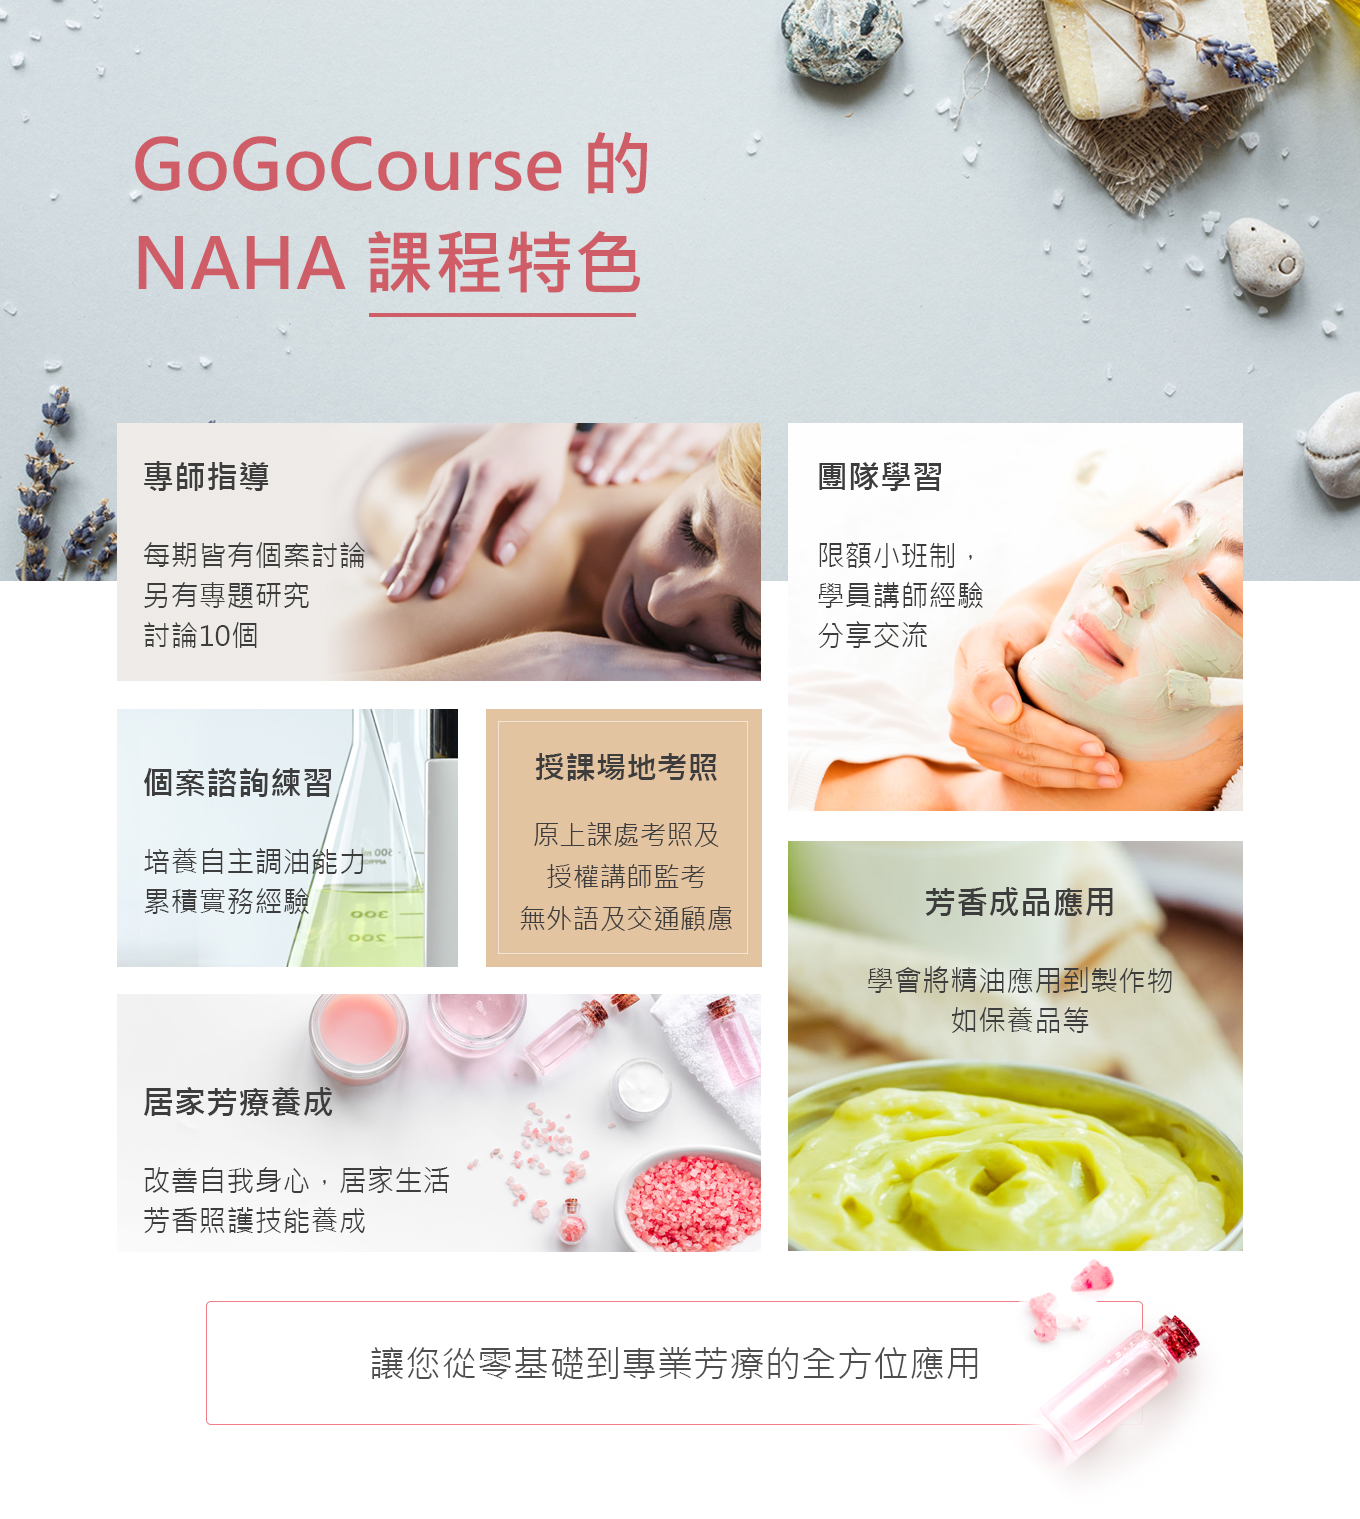 購購課gogocourse的NAHA課程特色